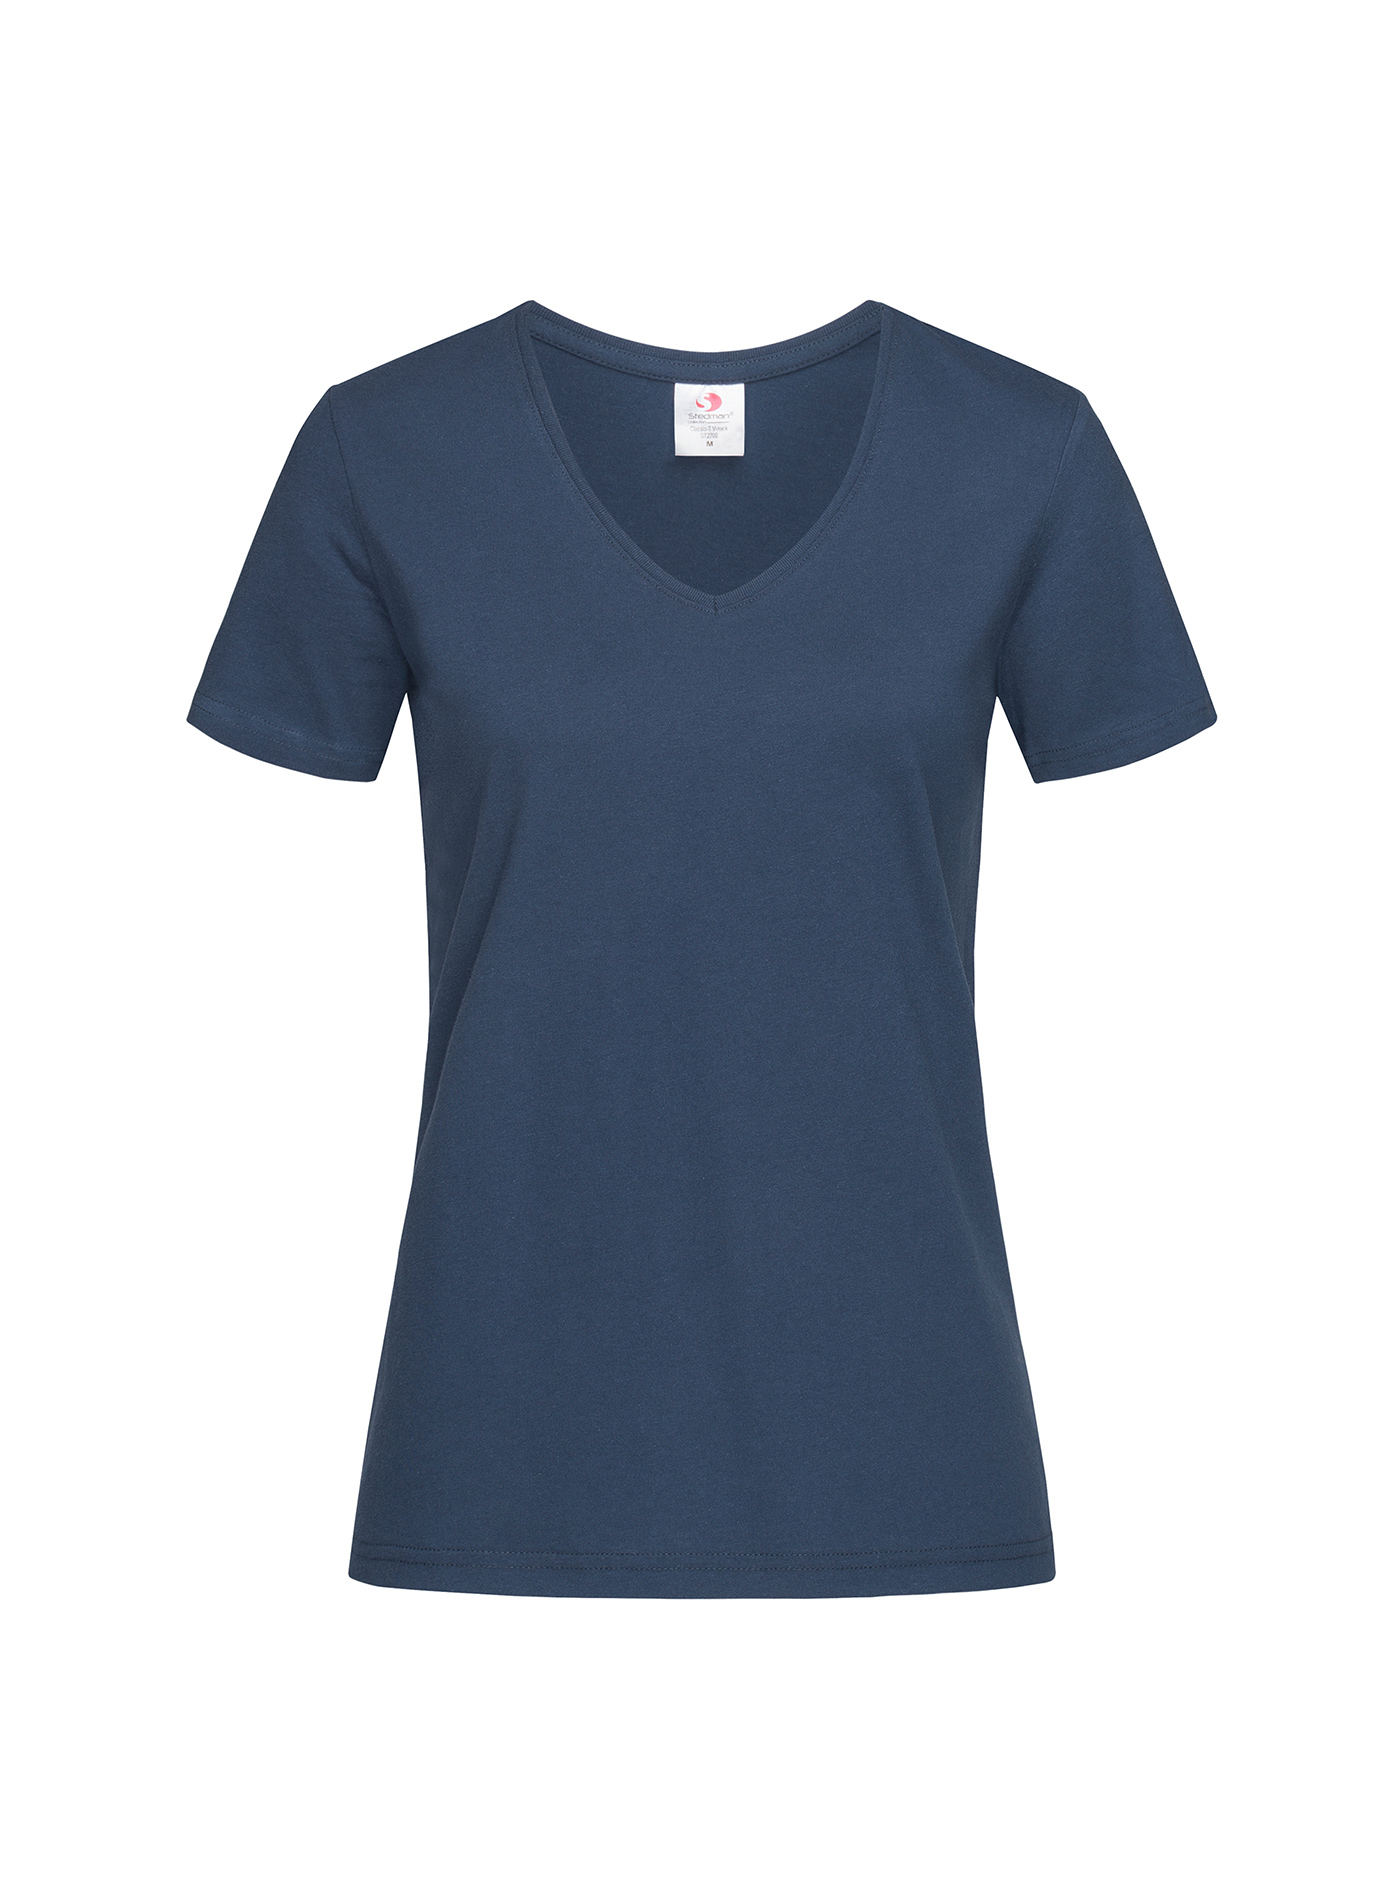 Dámské tričko s V-výstřihem Stedman - Námořnická modrá XXL